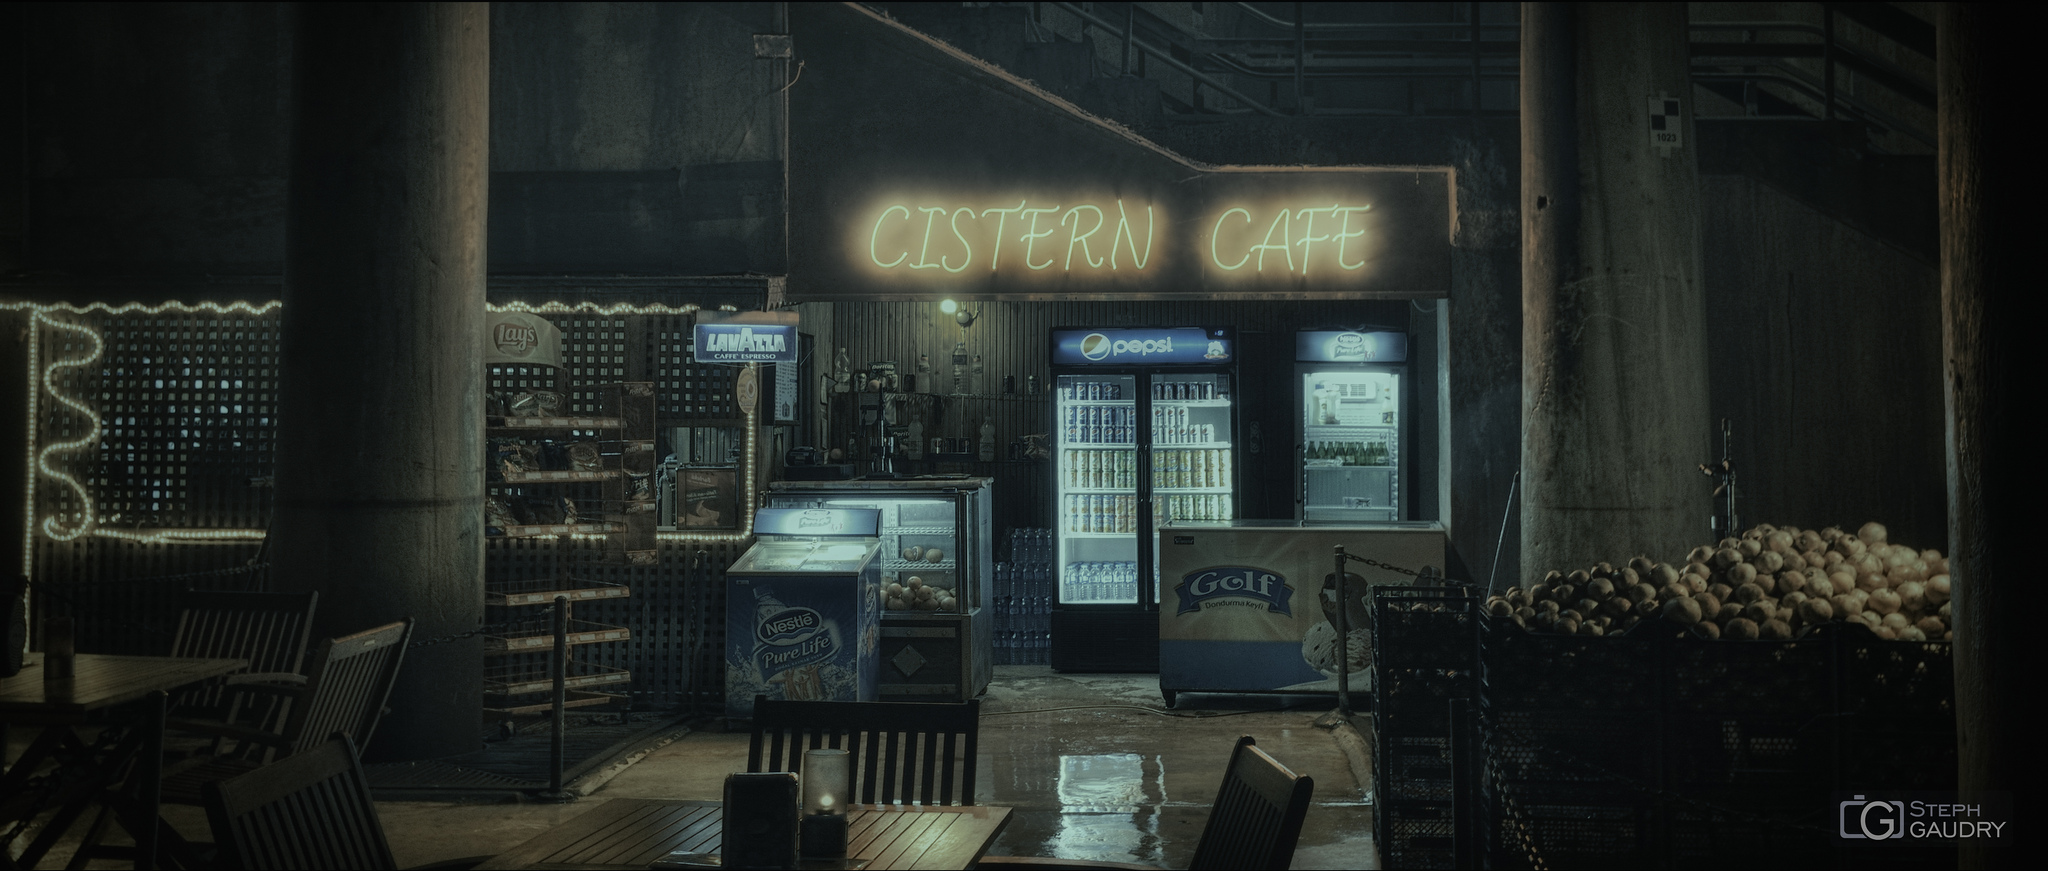 Istanbul - Cistern Cafe [Cliquez pour lancer le diaporama]